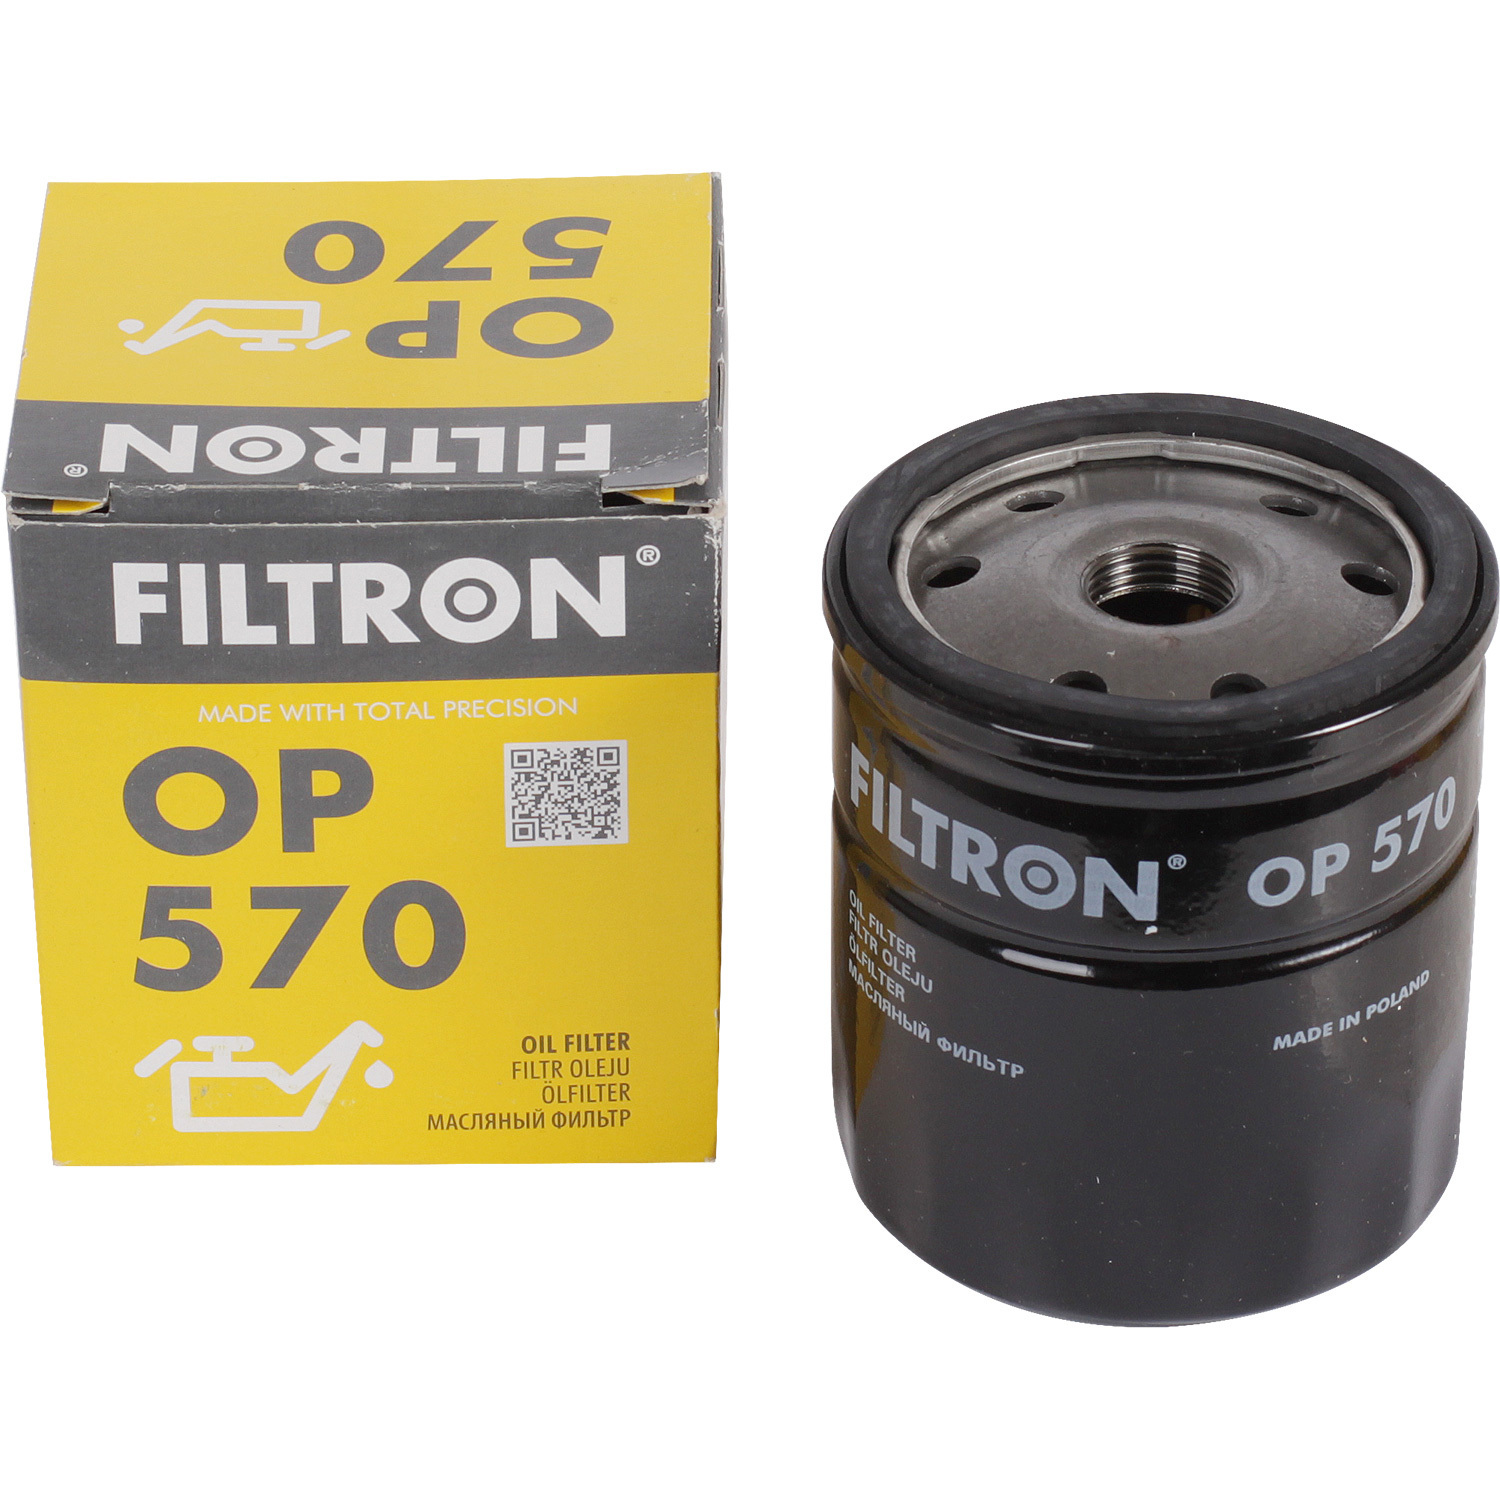 фильтры filtron фильтр масляный filtron op5452 Фильтры Filtron Фильтр масляный Filtron OP570